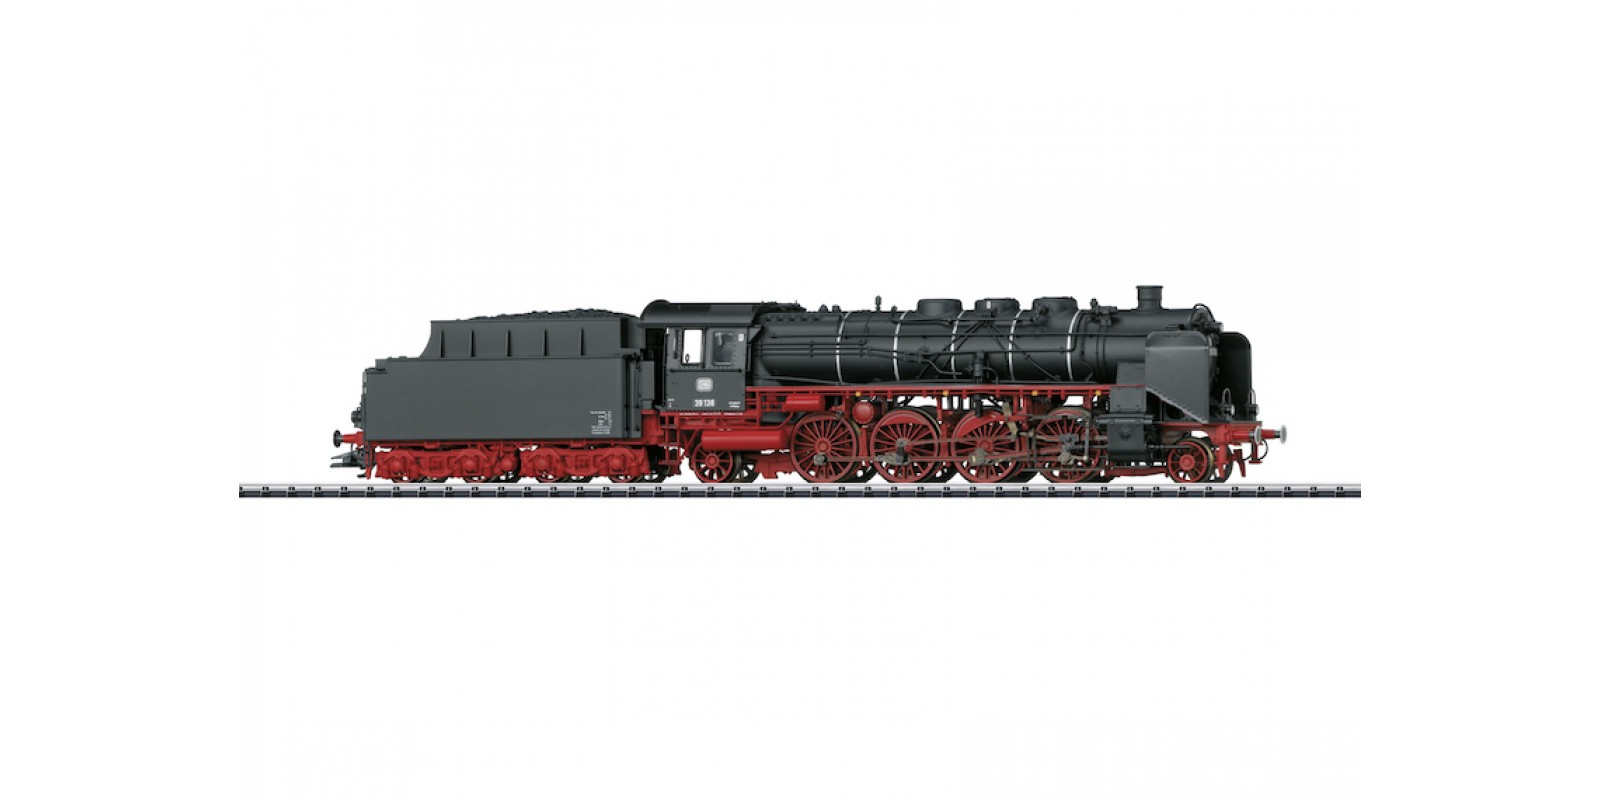  T22240 Class 39 Passenger Steam Locomotive